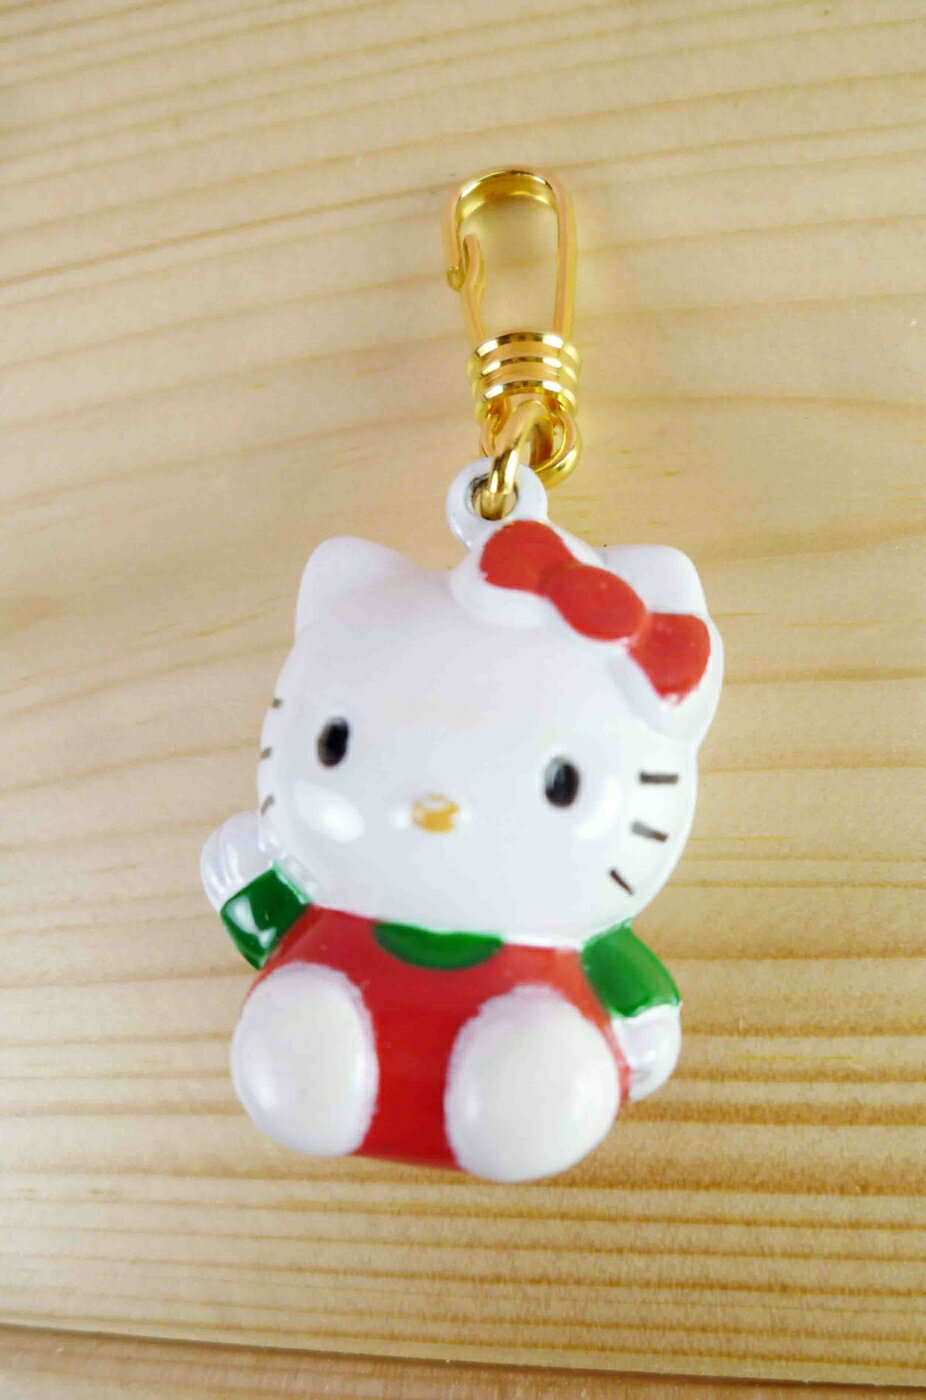 【震撼精品百貨】Hello Kitty 凱蒂貓 KITTY吊飾拉扣-鈴鐺 震撼日式精品百貨